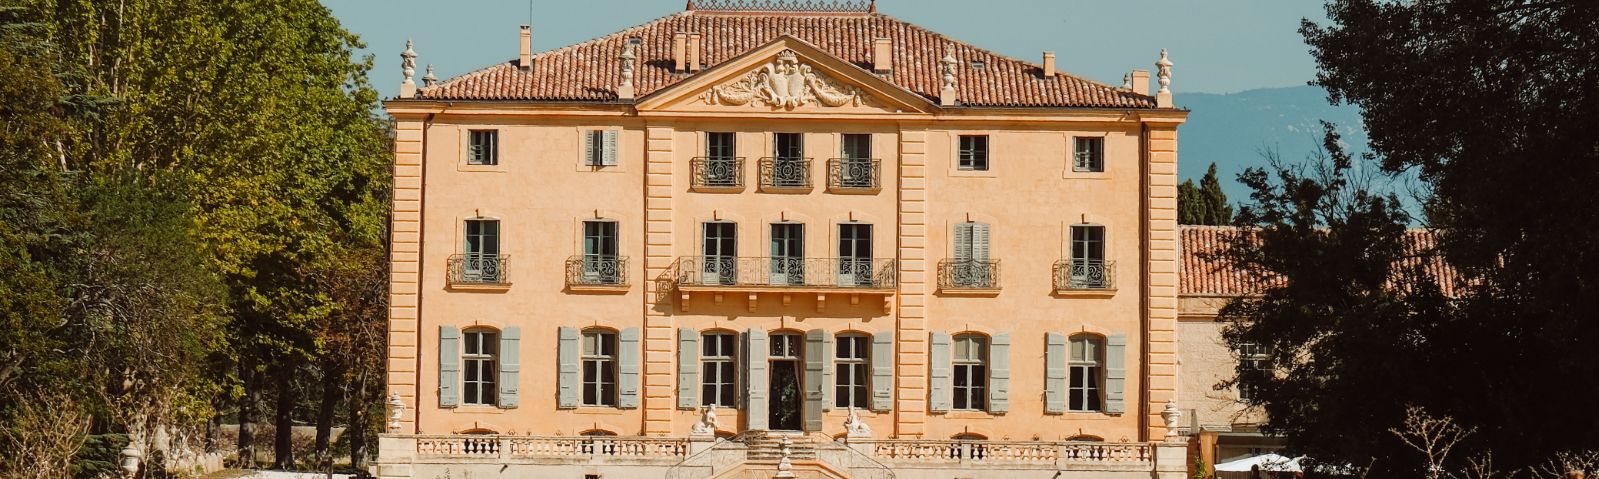 Domaine de Fonscolombe - Vignoble et hôtellerie 